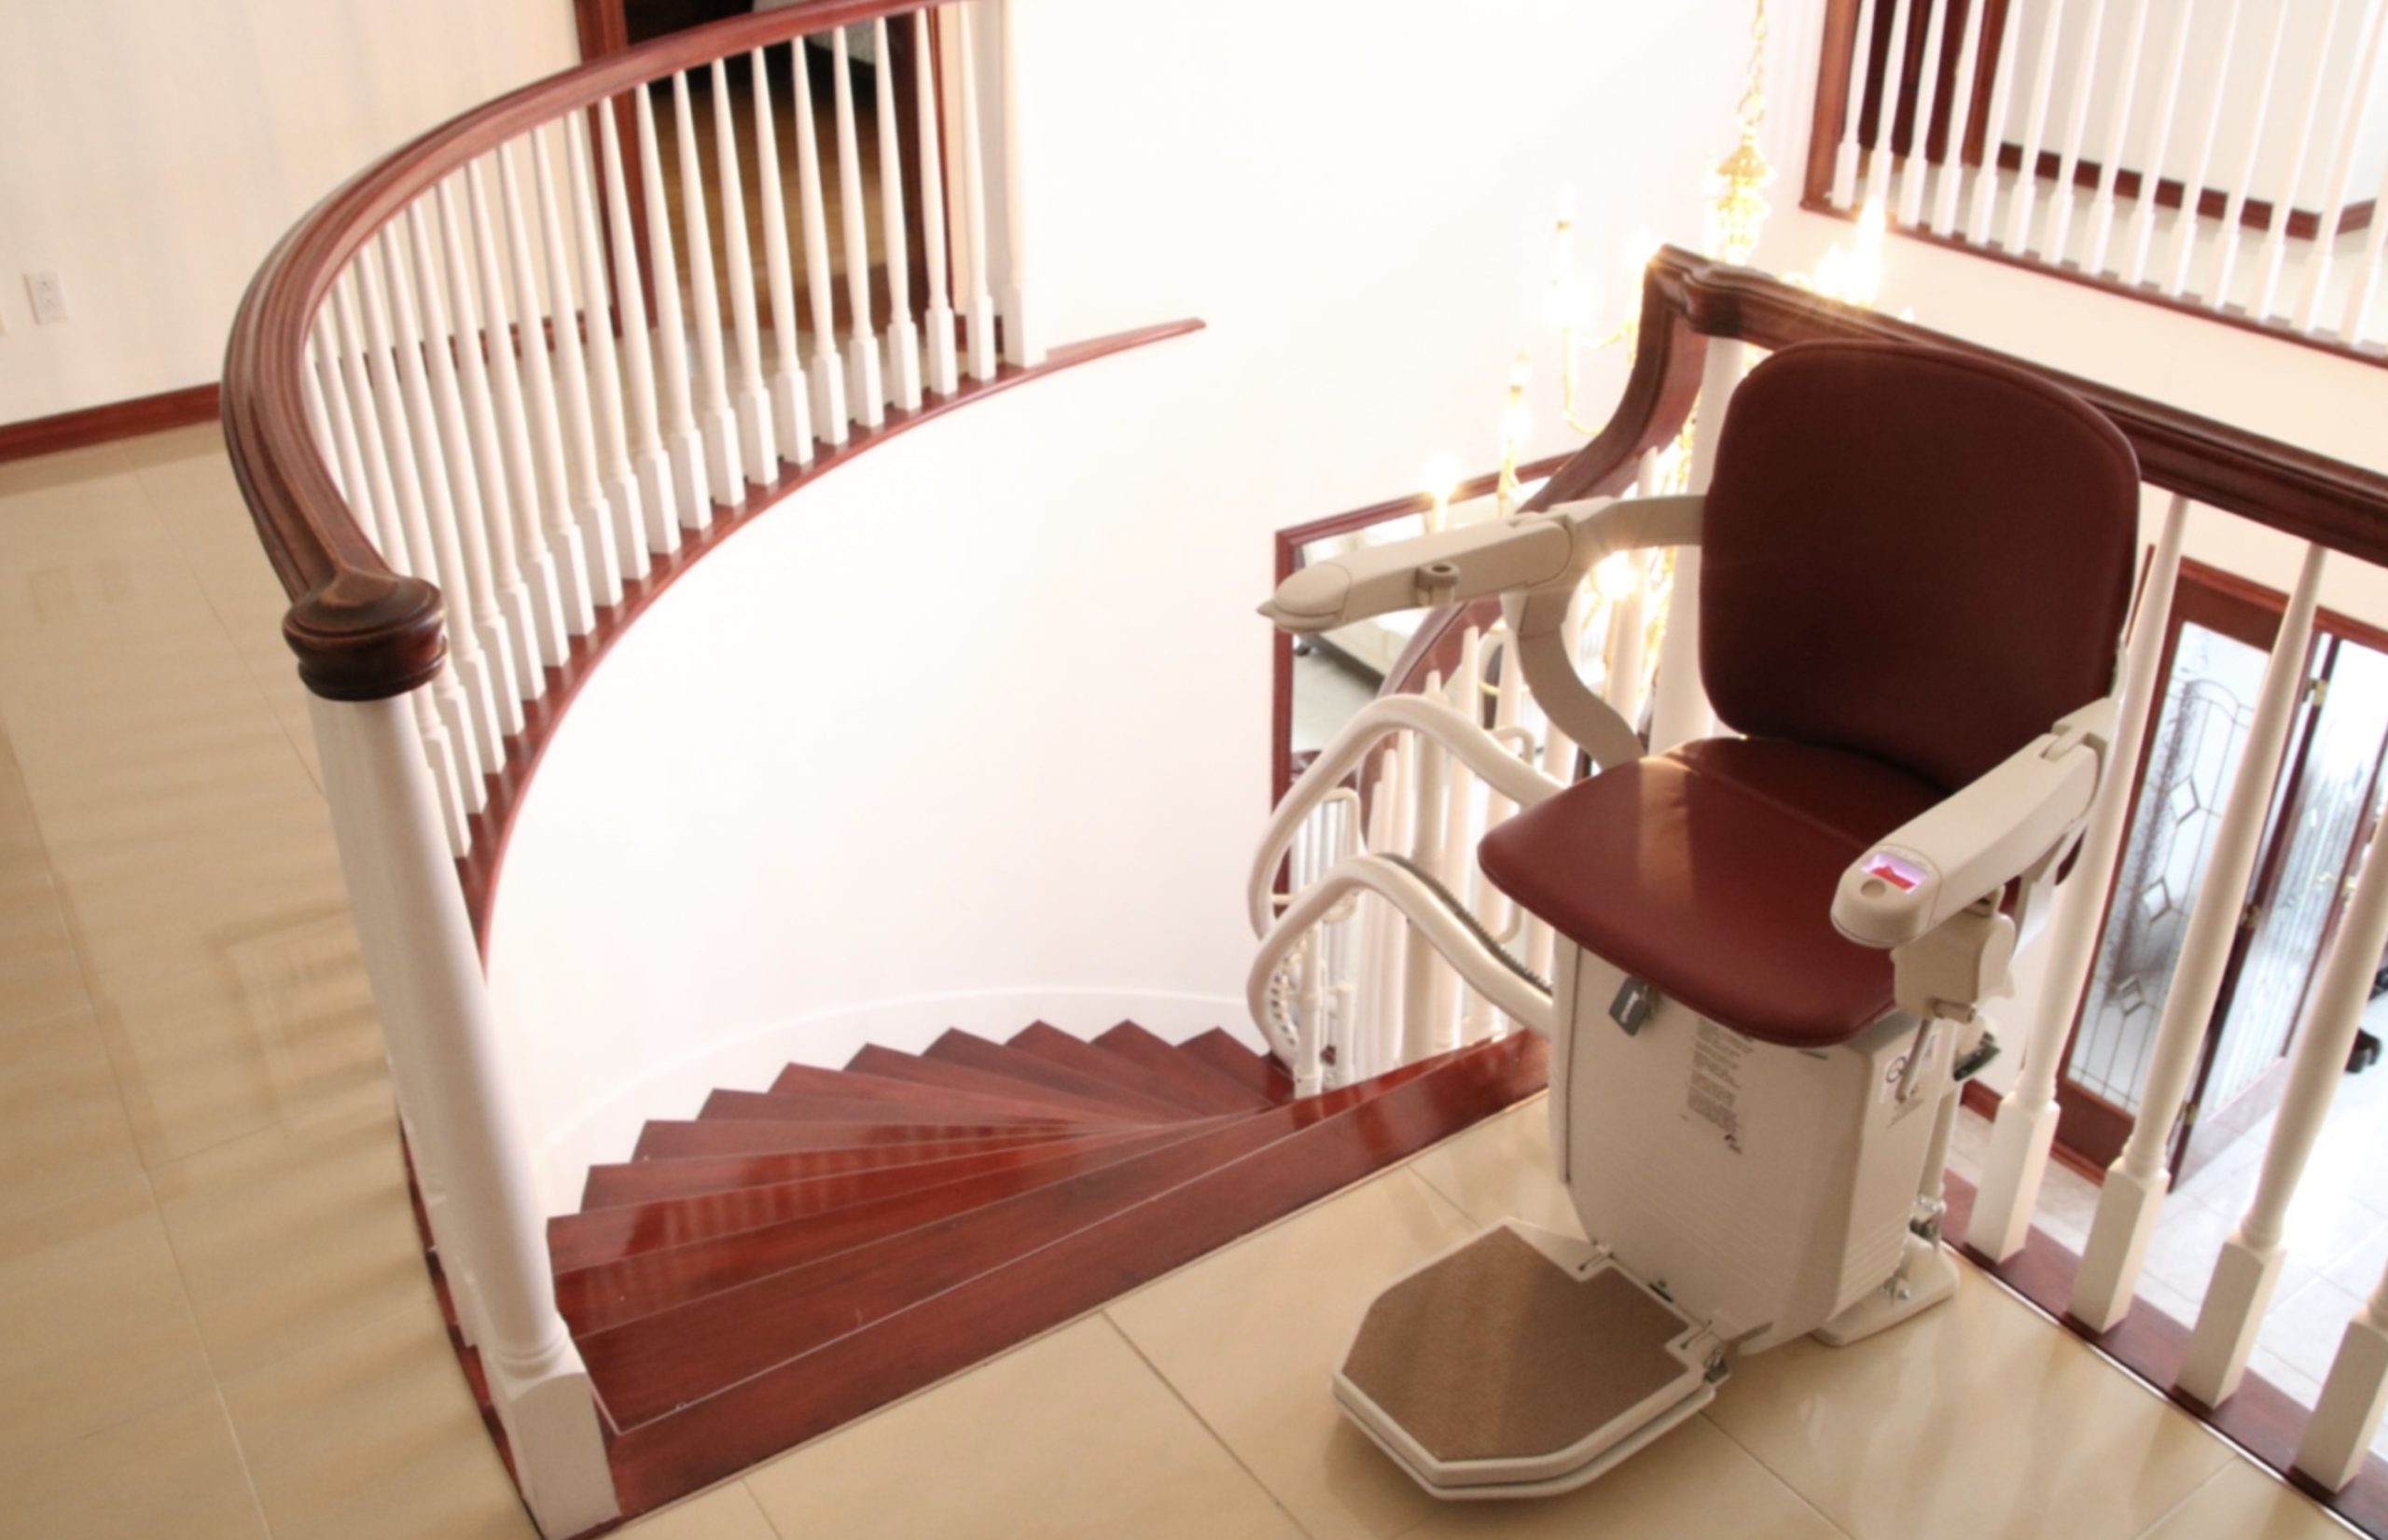 Le siège escalier : est-ce une solution pour faciliter la mobilité des séniors ?